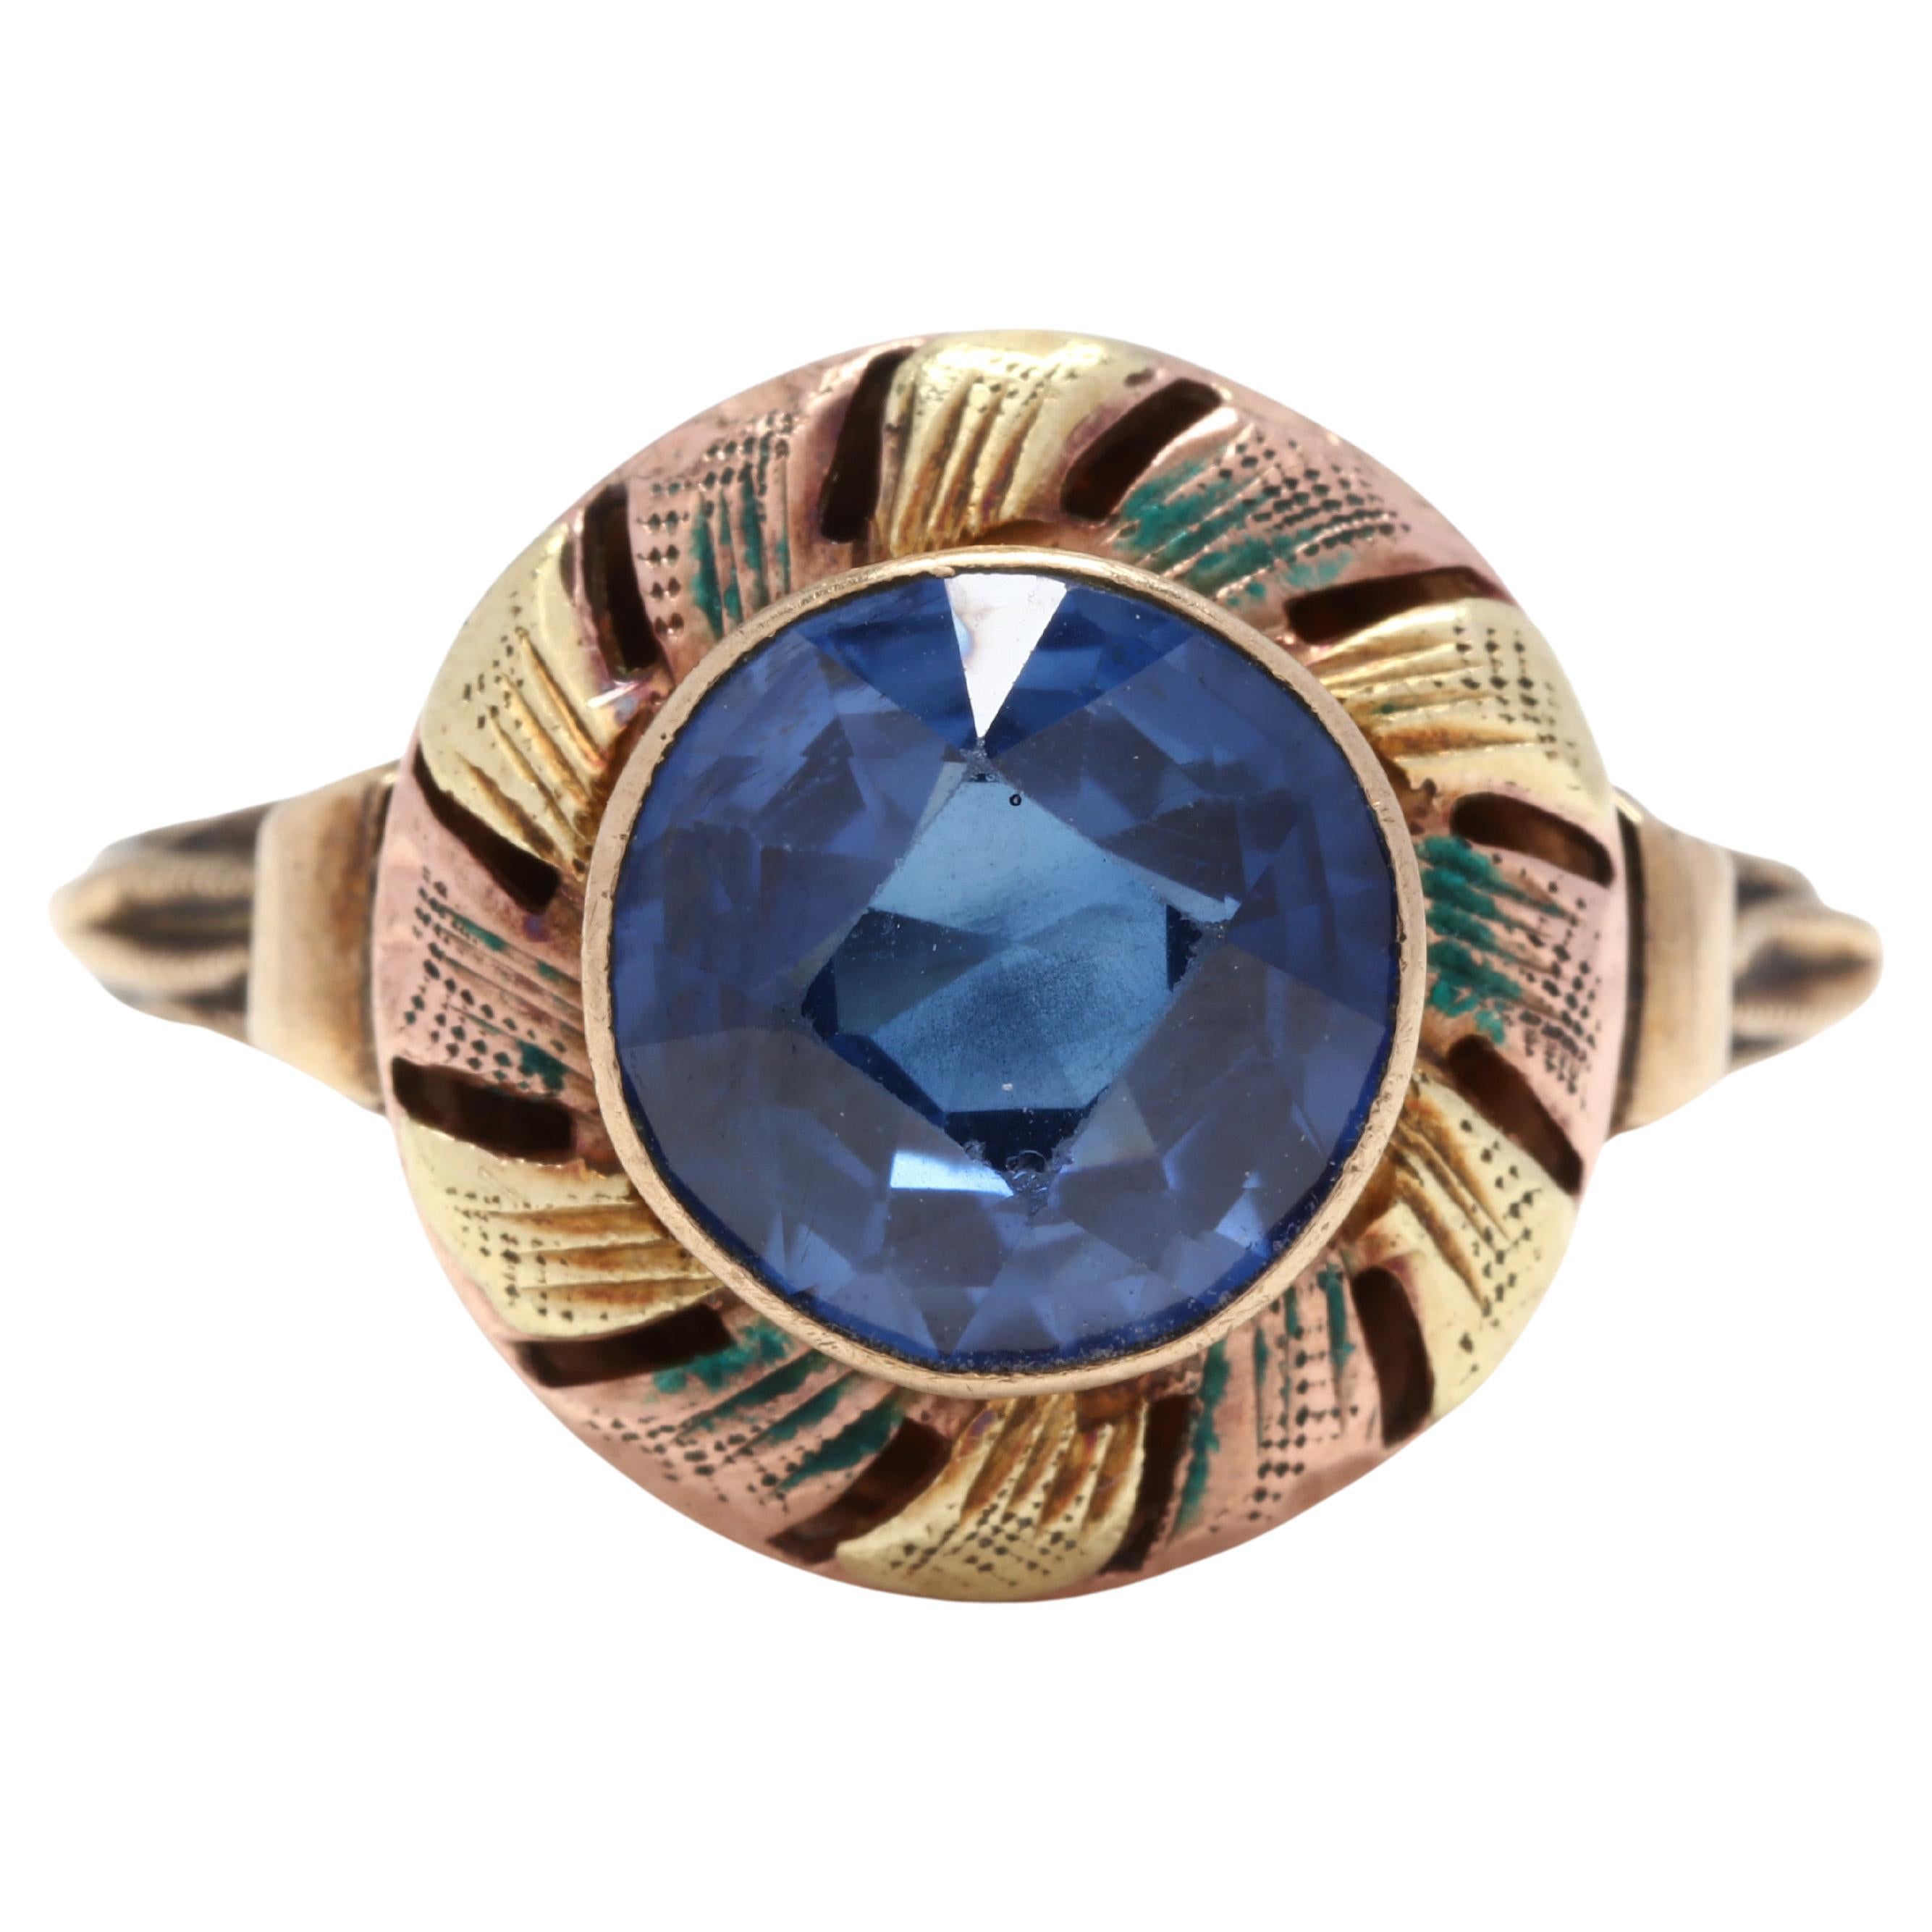 Vintage 10K Yellow/Rose Gold, Blue Stone & Enamel Ring